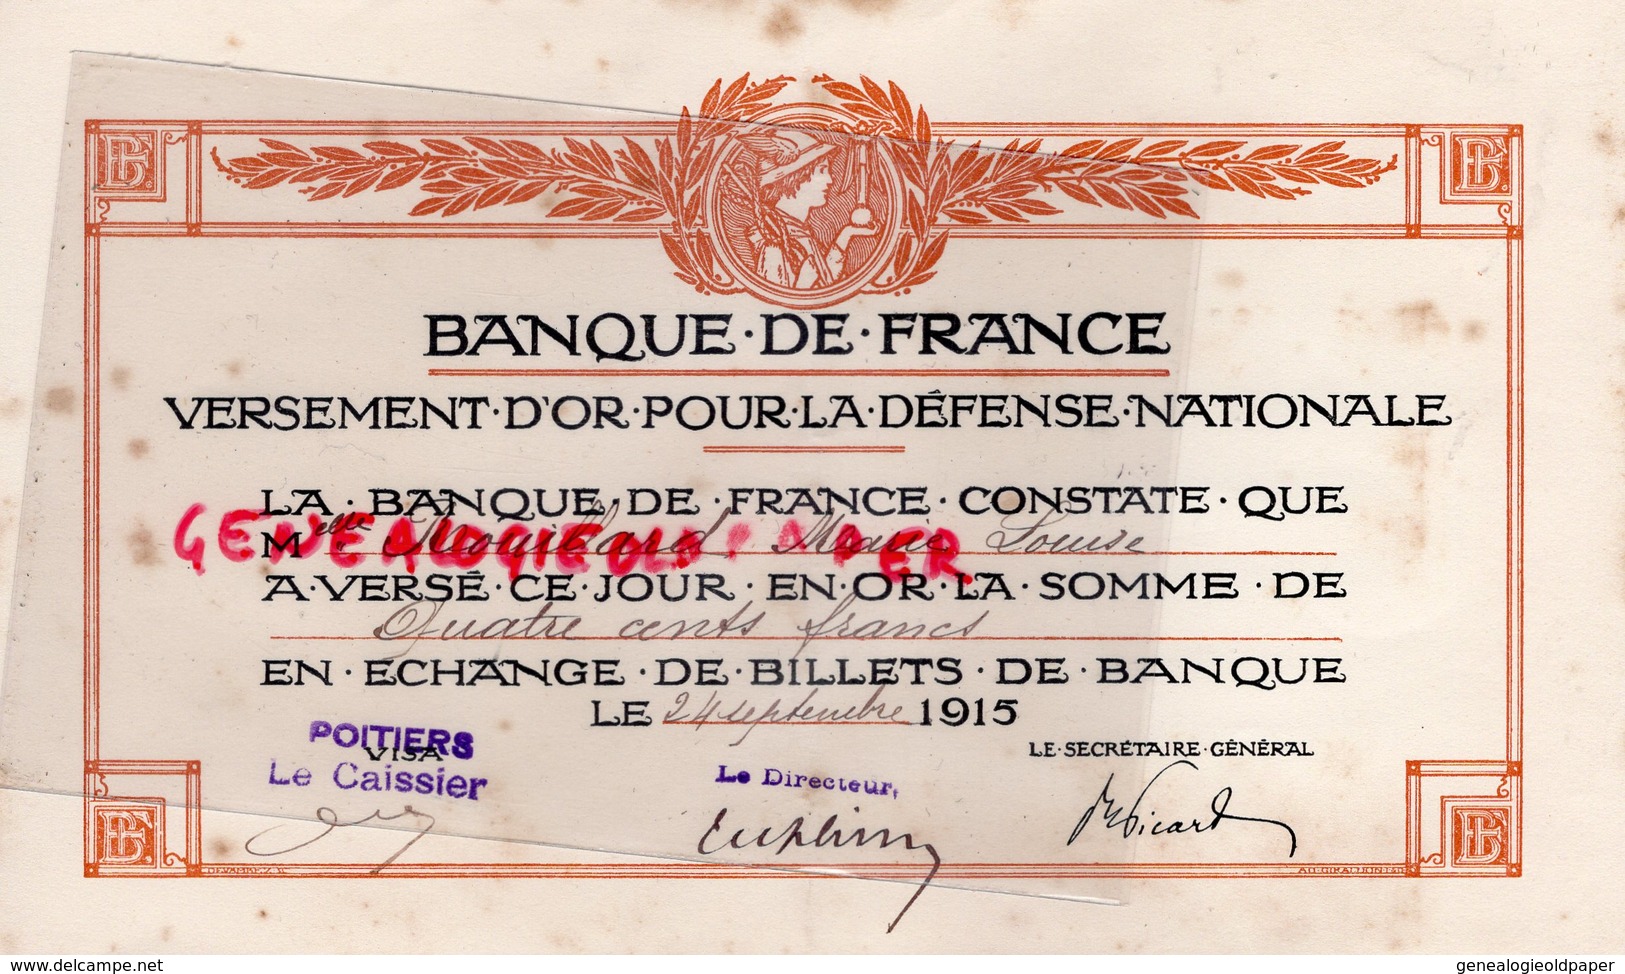 86- POITIERS-- VERSEMENT OR DEFENSE NATIONALE -BANQUE DE FRANCE- 400 CENTS FRANCS- 1915- MARIE LOUISE ROUILLARD - Bank & Insurance